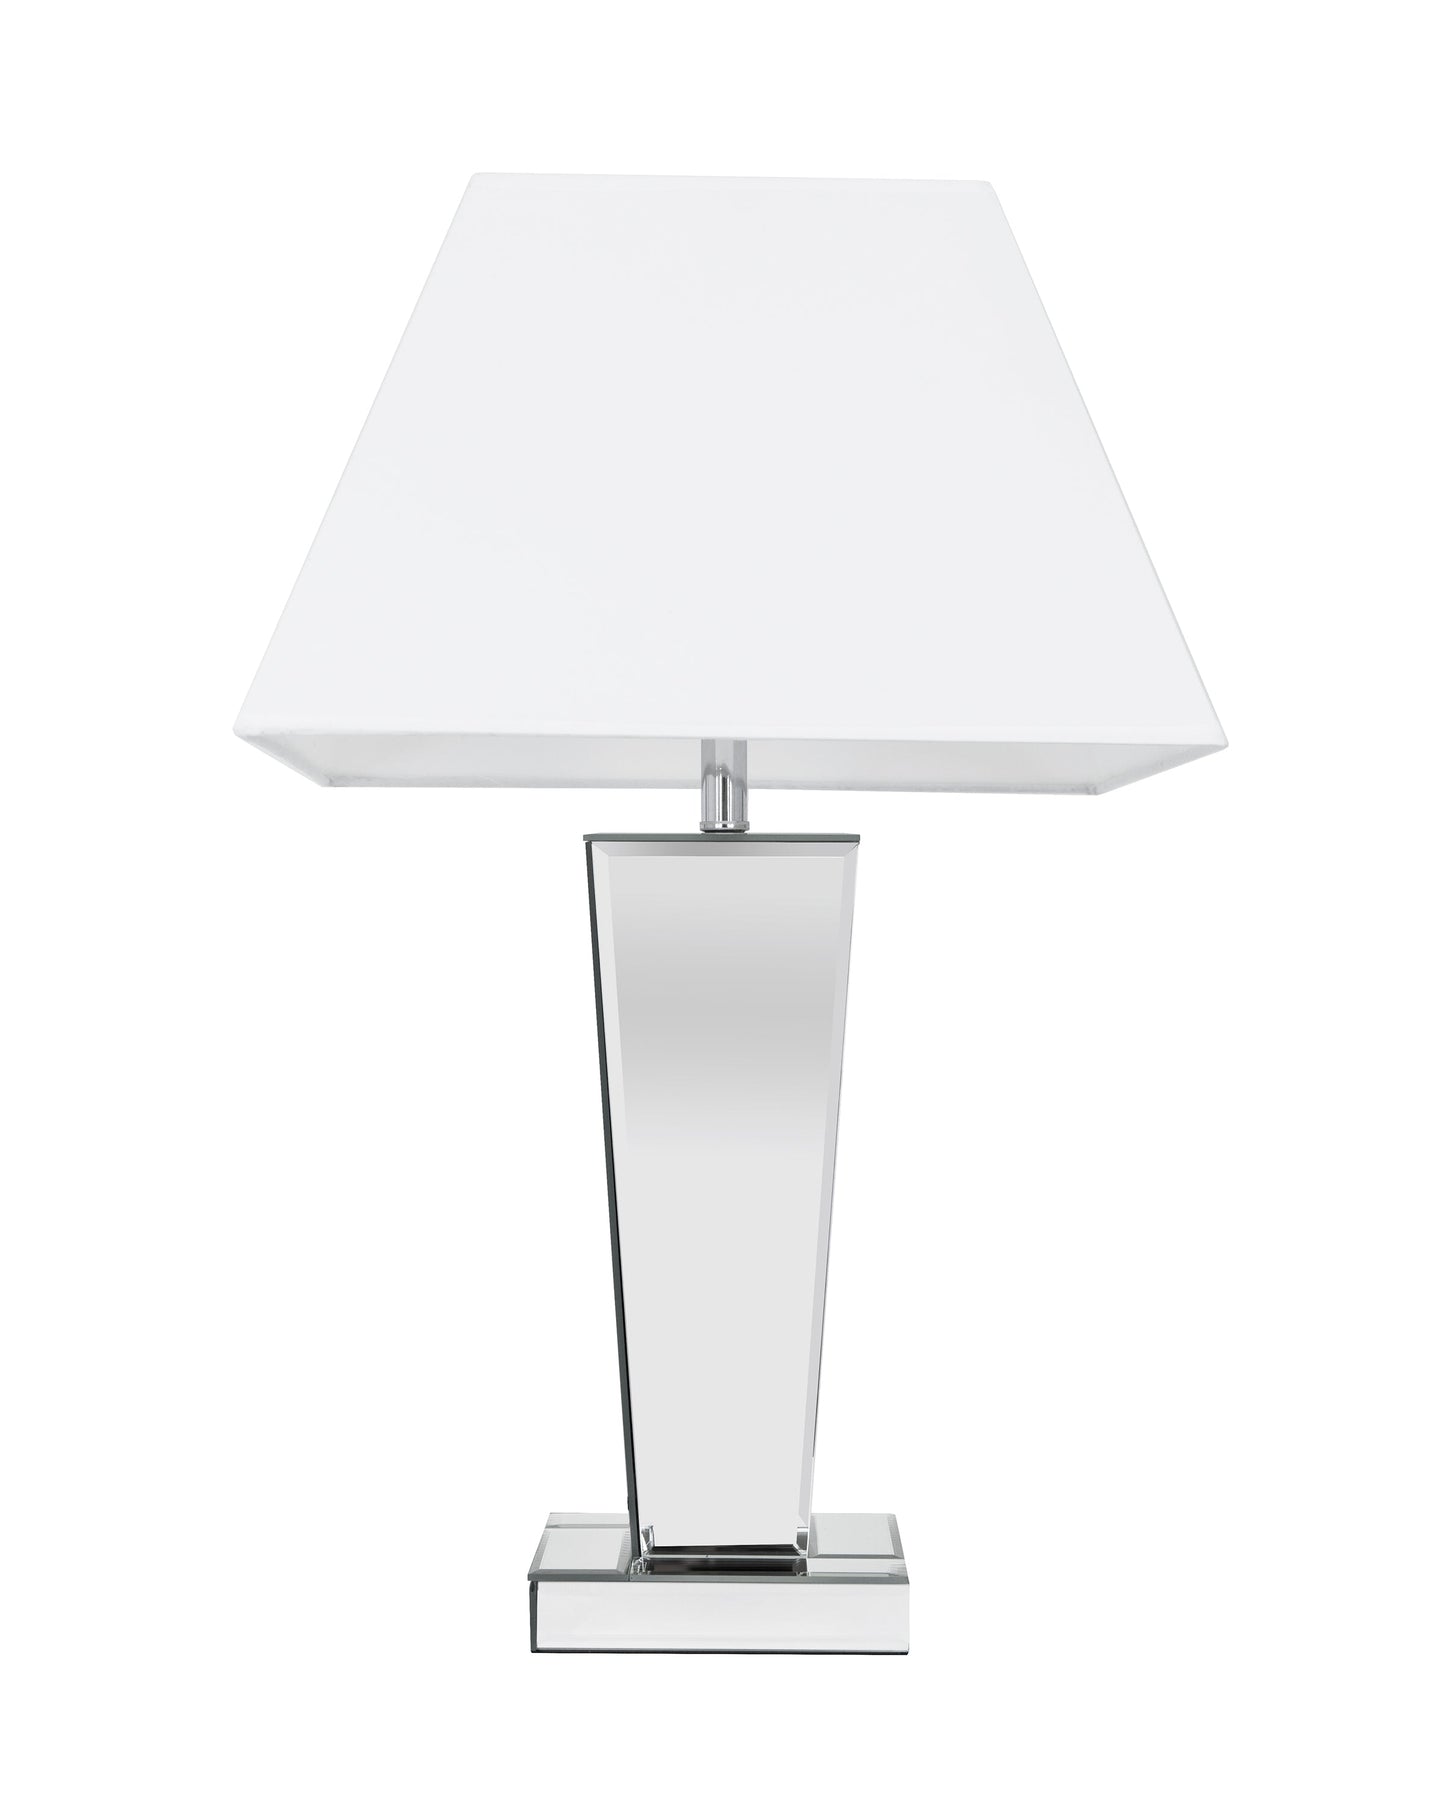 Mirror Table Lamp - Expo Home Decor